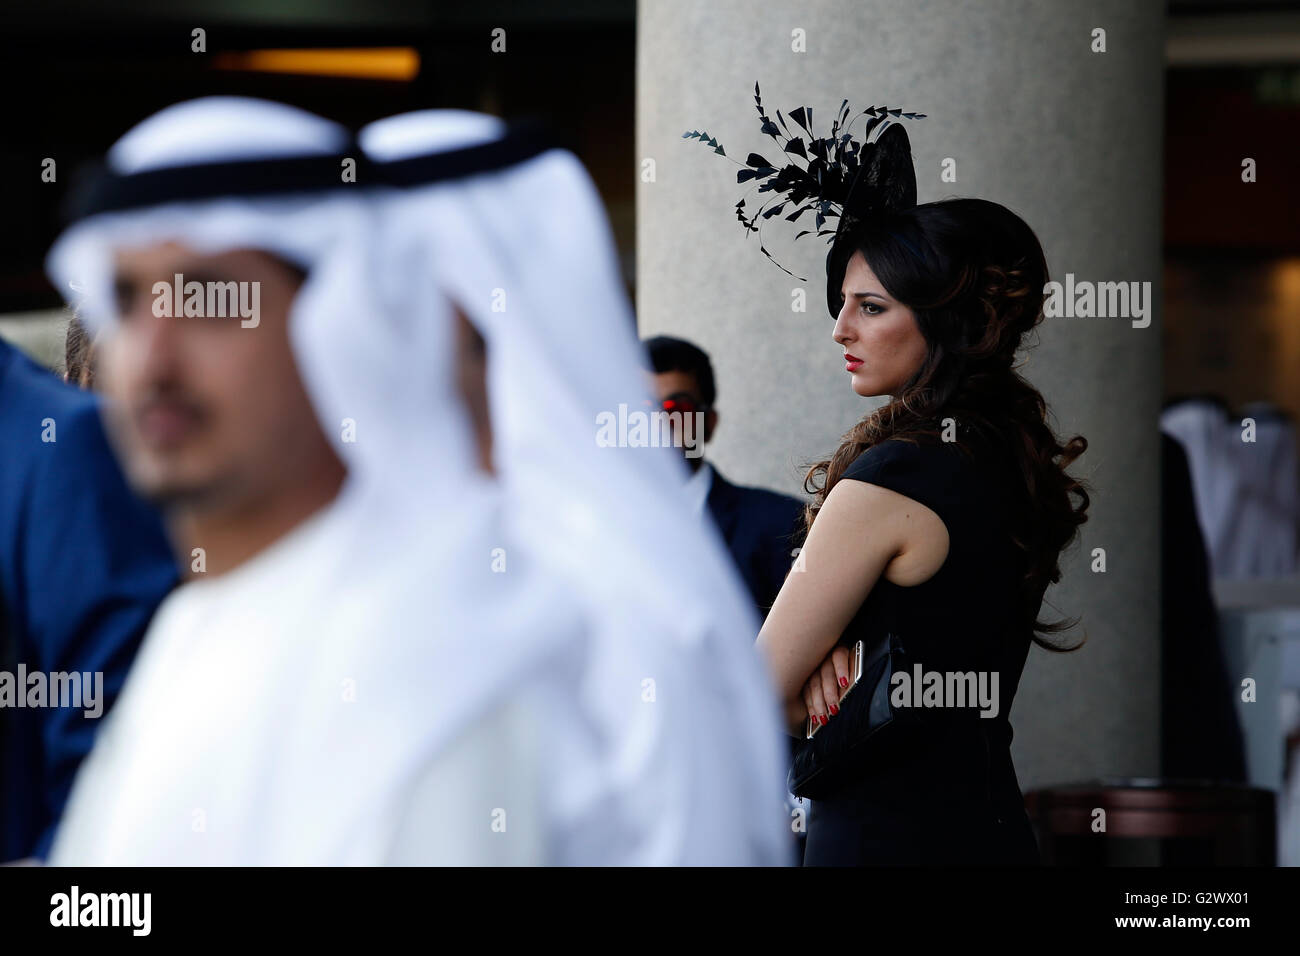 28.03.2015, Dubai, Dubai, Vereinigte Arabische Emirate - elegant gekleidete Frau mit Hut und Männer in Tracht bei den Rennen. 00S150328D711CAROEX. JPG - nicht für den Verkauf in G E R M A N Y, A U S T R I A S W I T Z E R L A N D [MODEL-RELEASE: Nein, PROPERTY-RELEASE: Nein, (C) Caro Fotoagentur / Sorge, http://www.caro-images.com, info@carofoto.pl - jegliche Nutzung dieses Bildes unterliegt GEMA!] Stockfoto